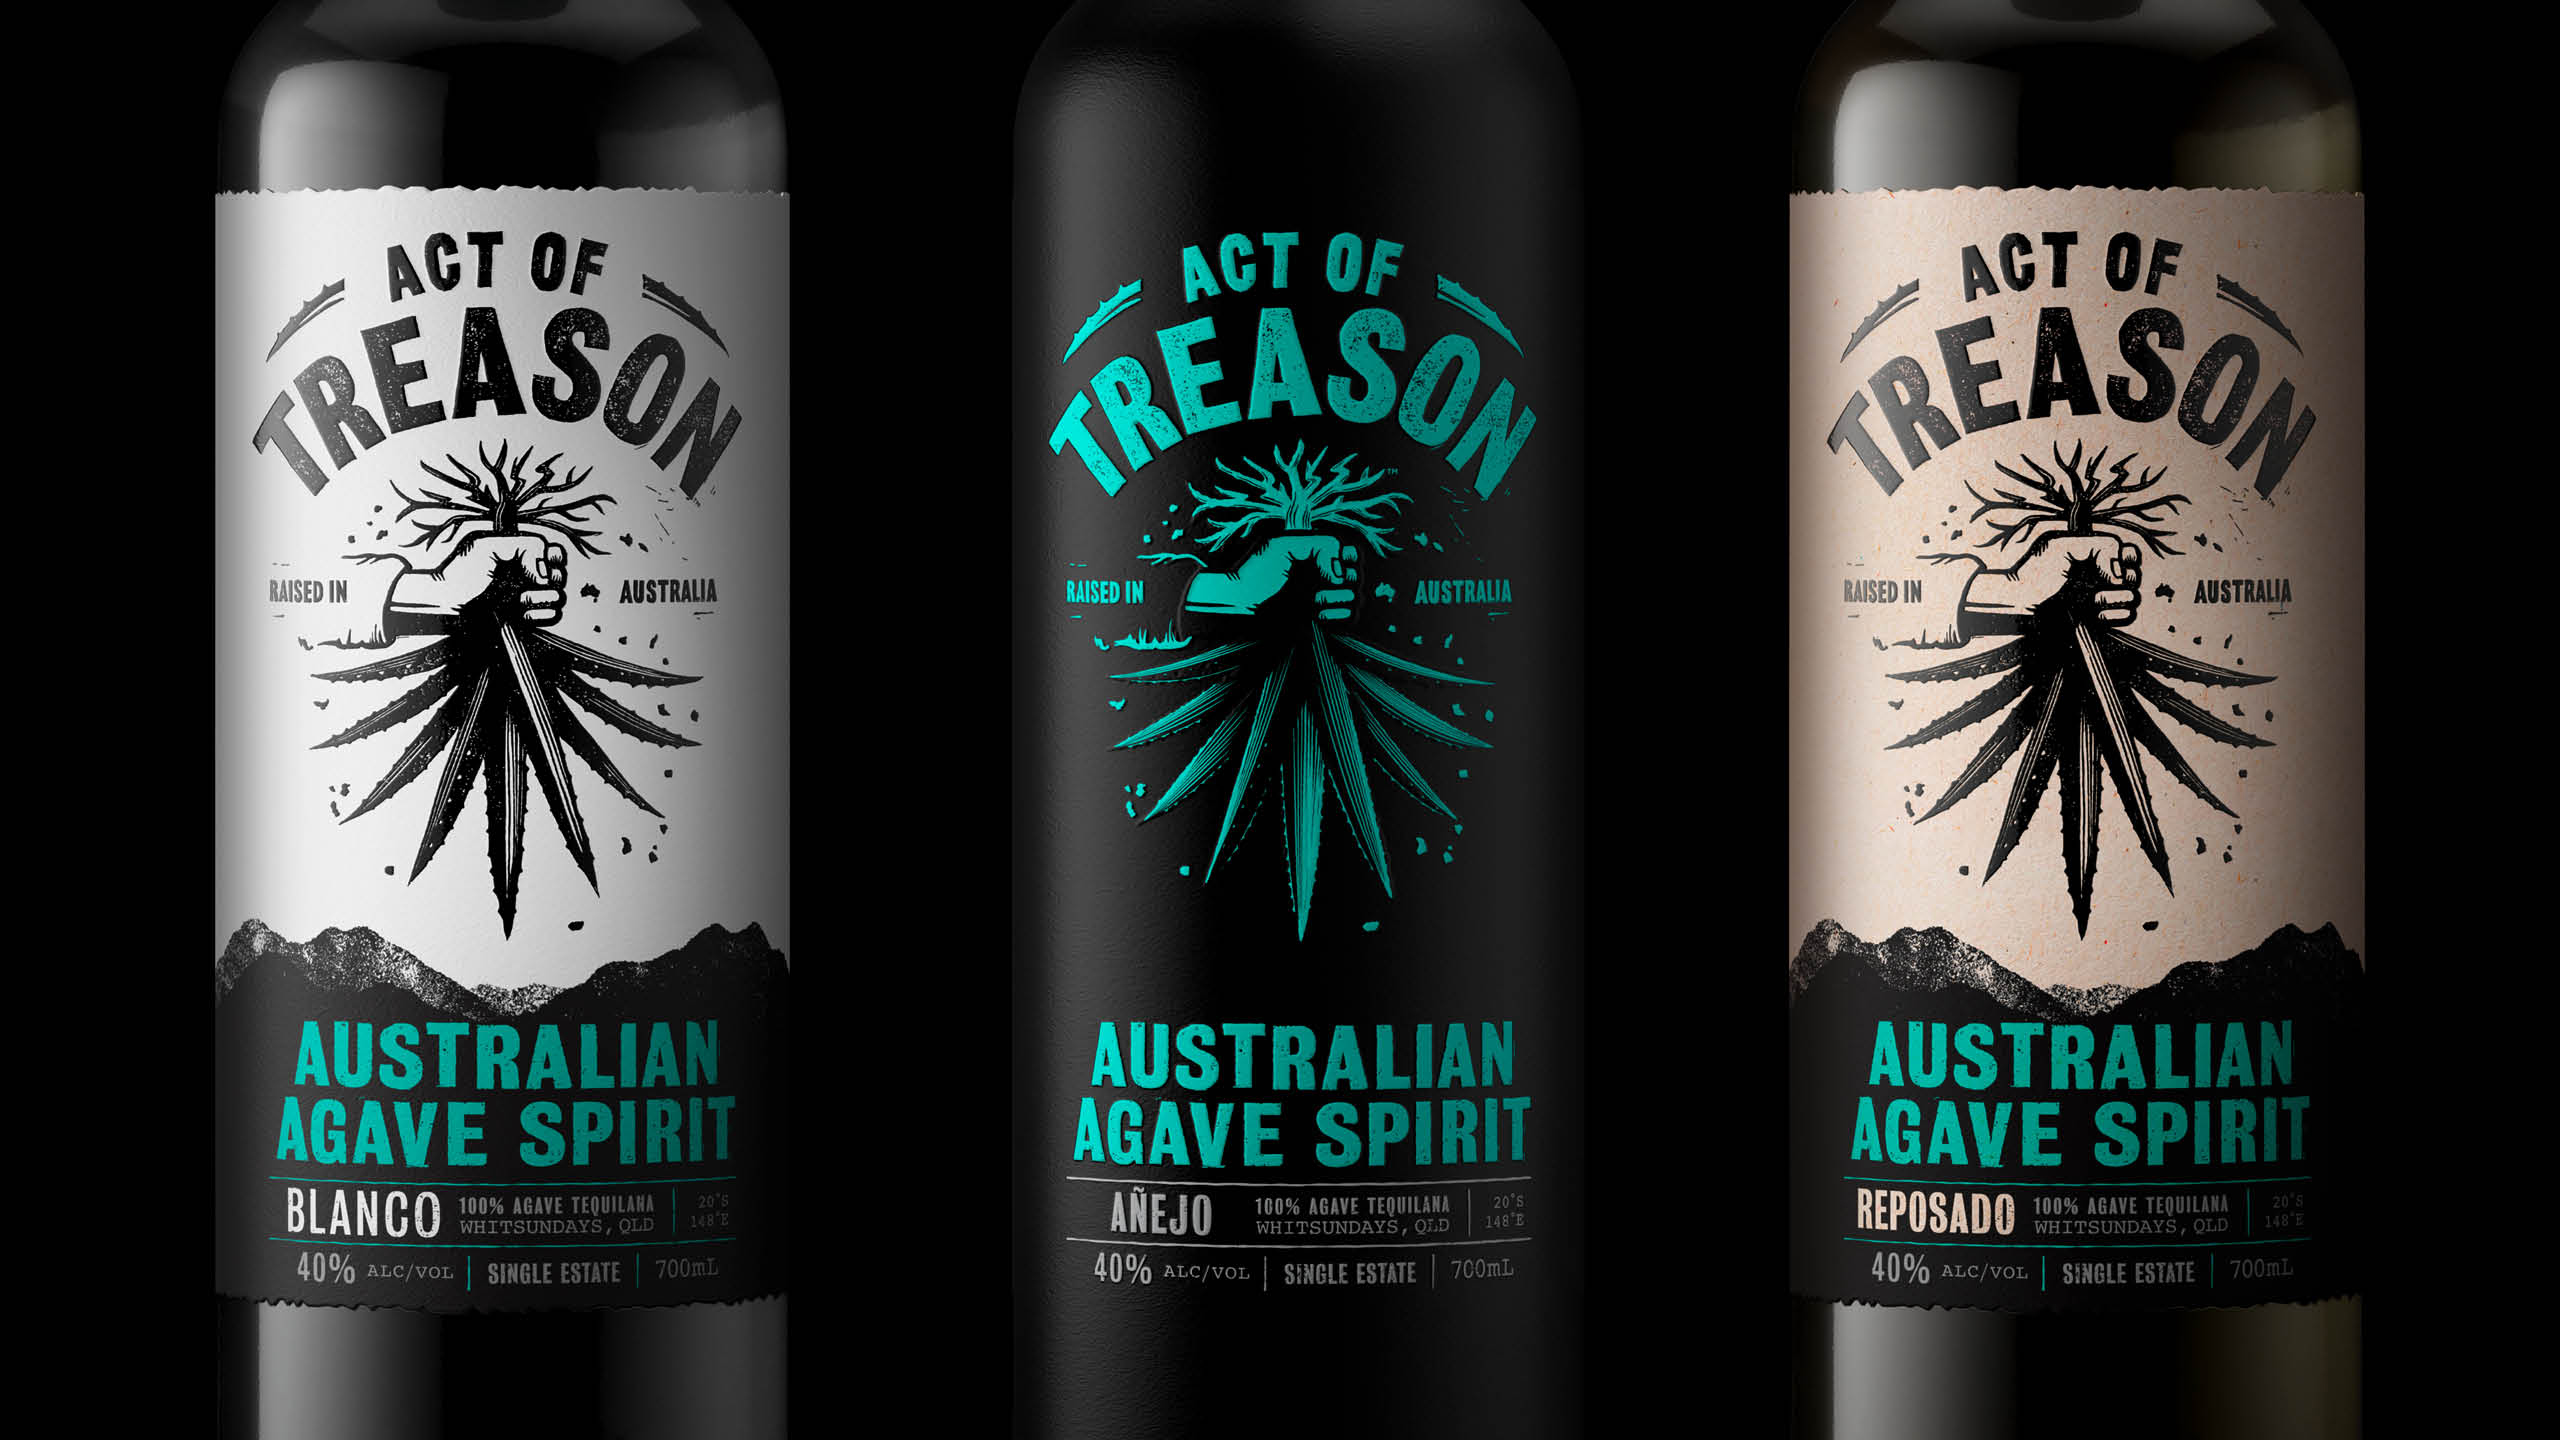 Act of Treason Packaging Design: Australia's Unique Agave Spirit